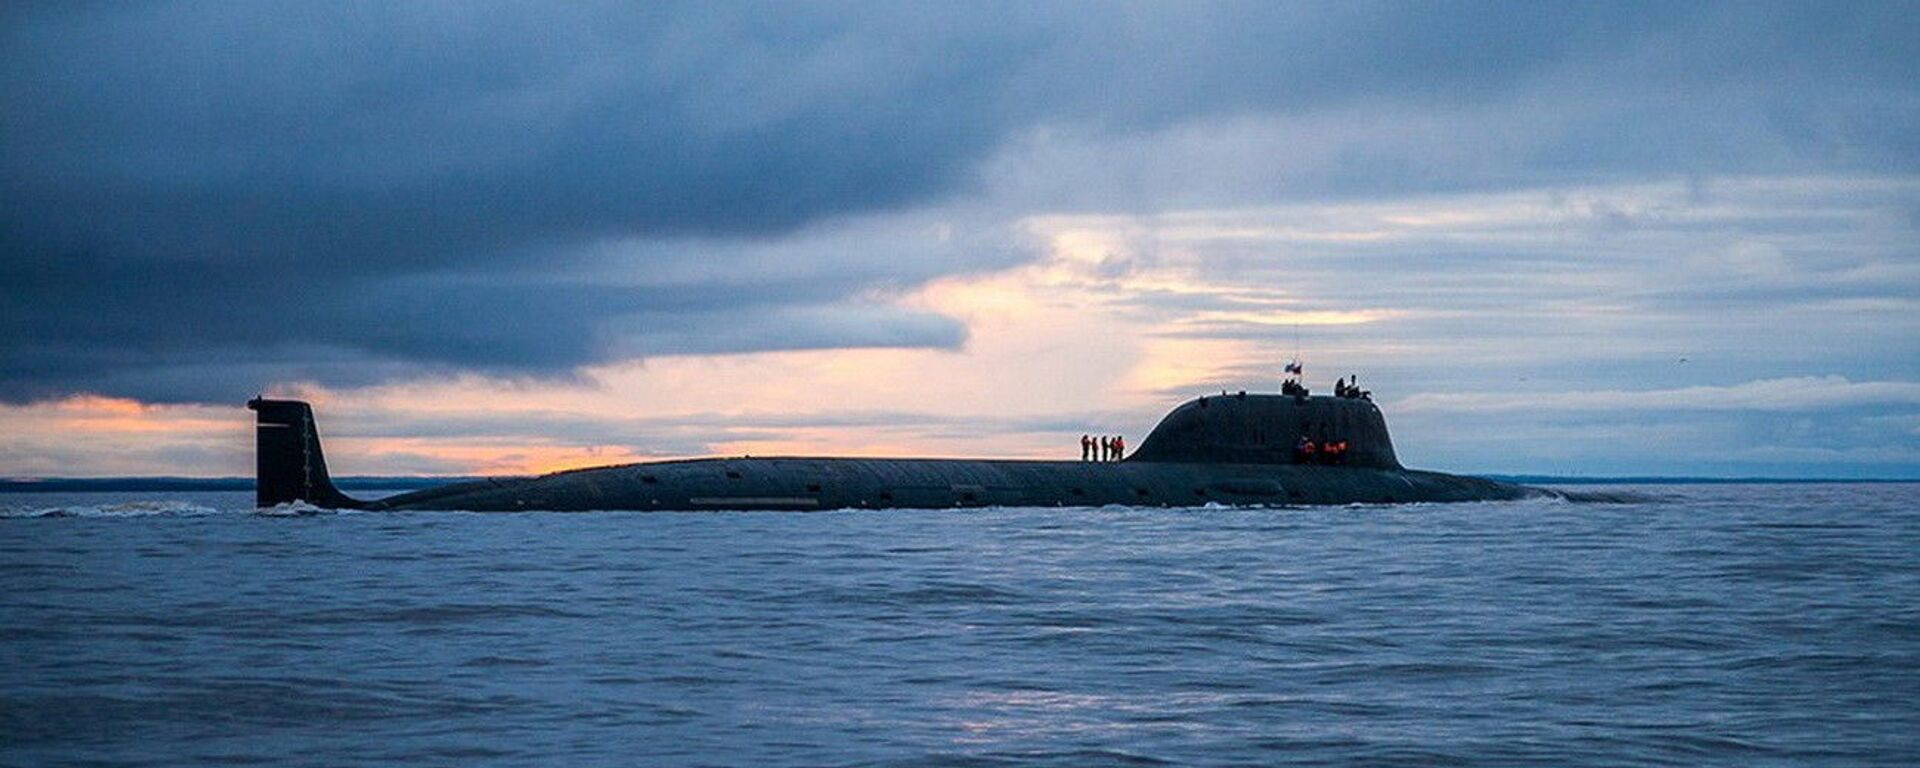 Атомная подводная лодка Северного флота «Северодвинск» - Sputnik Қазақстан, 1920, 04.09.2020